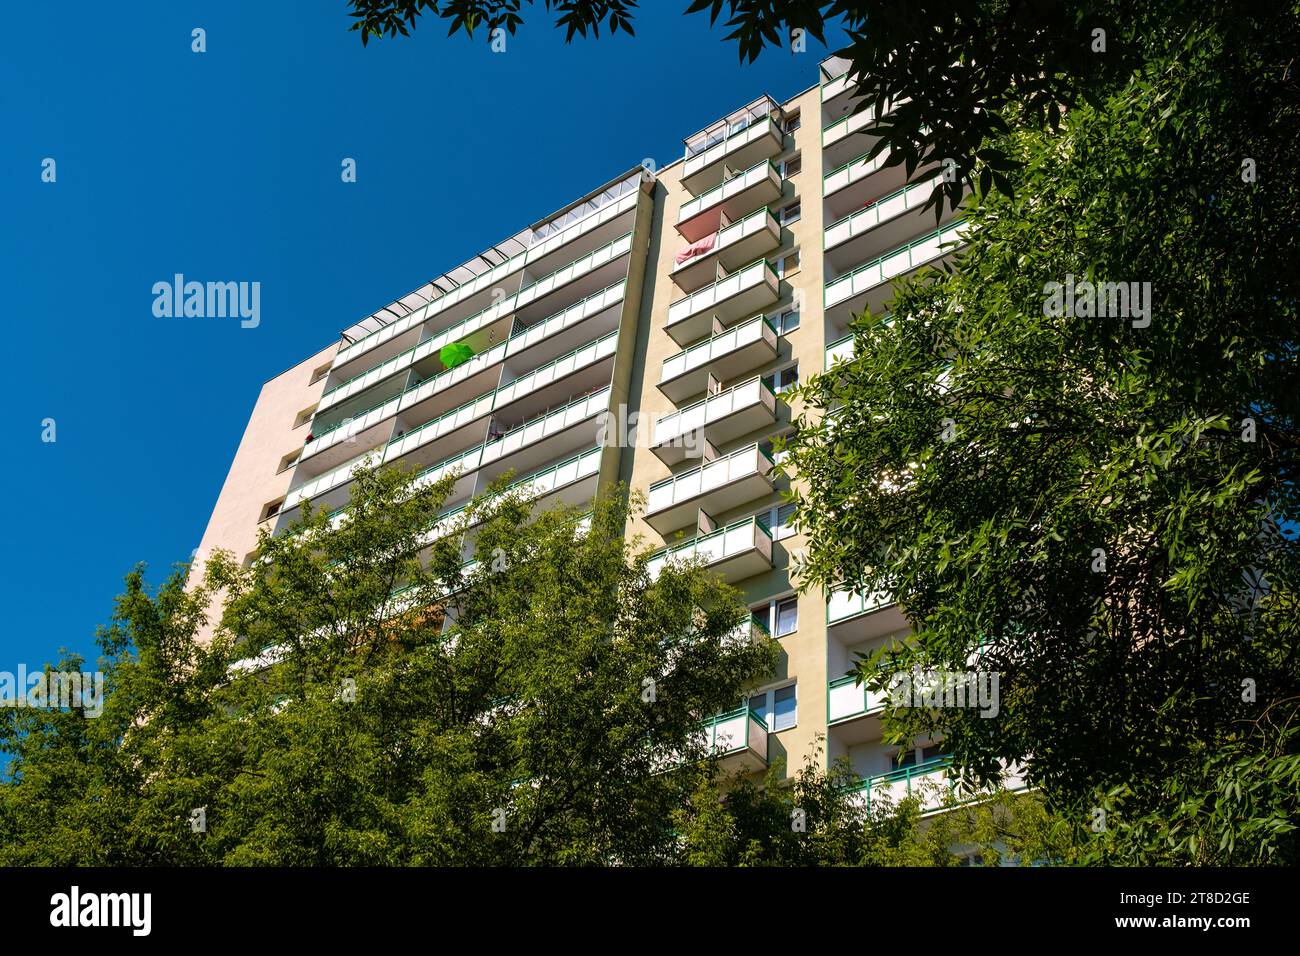 Varsavia, Polonia - 20 giugno 2021: Edificio residenziale comunista su larga scala con balconi in via Batorego nel quartiere Mokotow di Varsavia Foto Stock